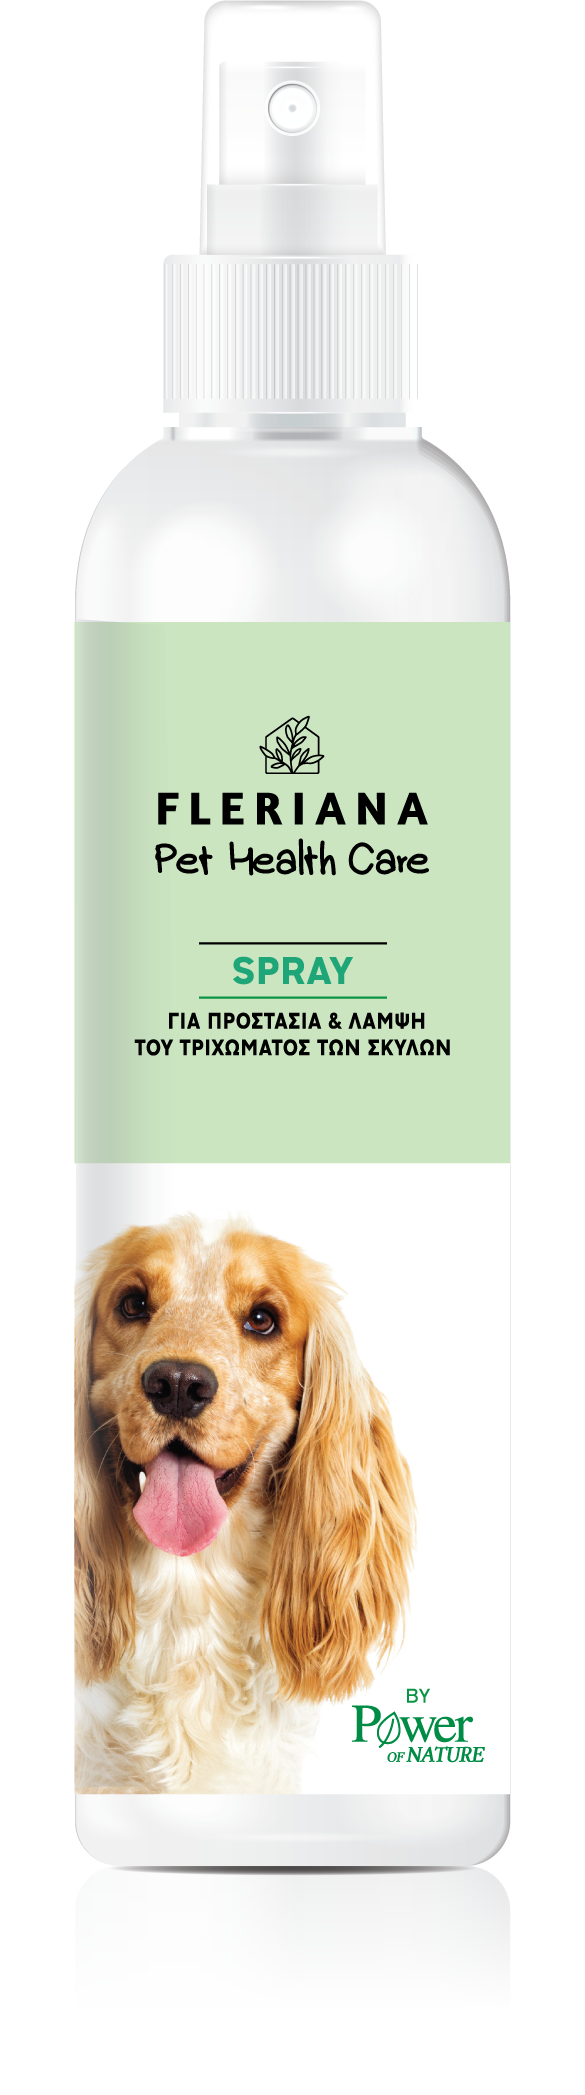 Pet Health Care Spray